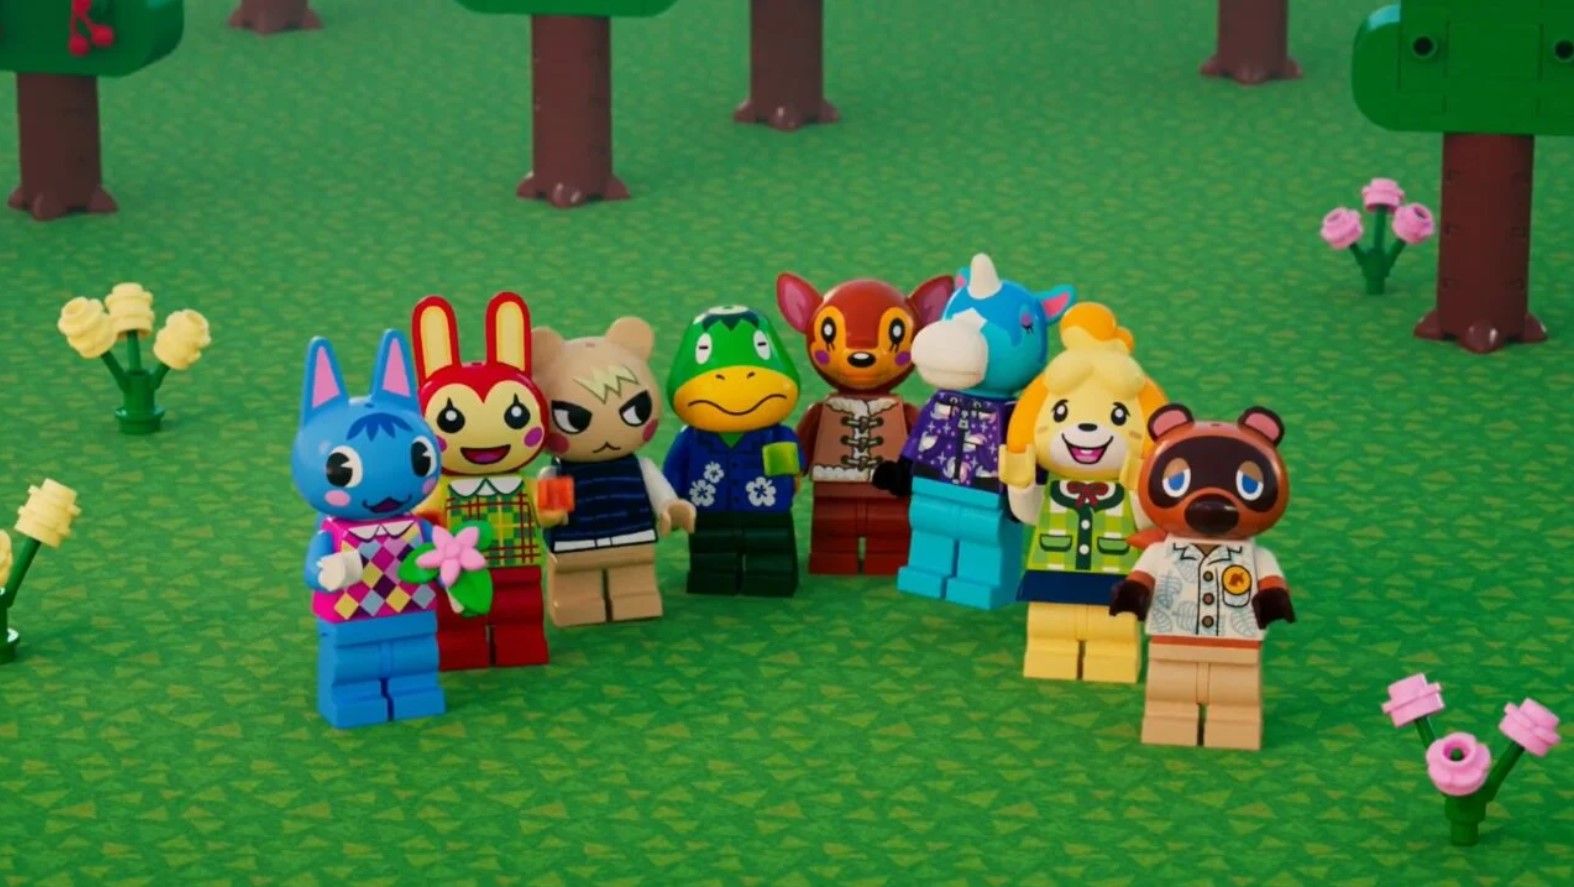 Компания Nintendo объявила о том, что наборы Lego Animal Crossing будут доступны для приобретения